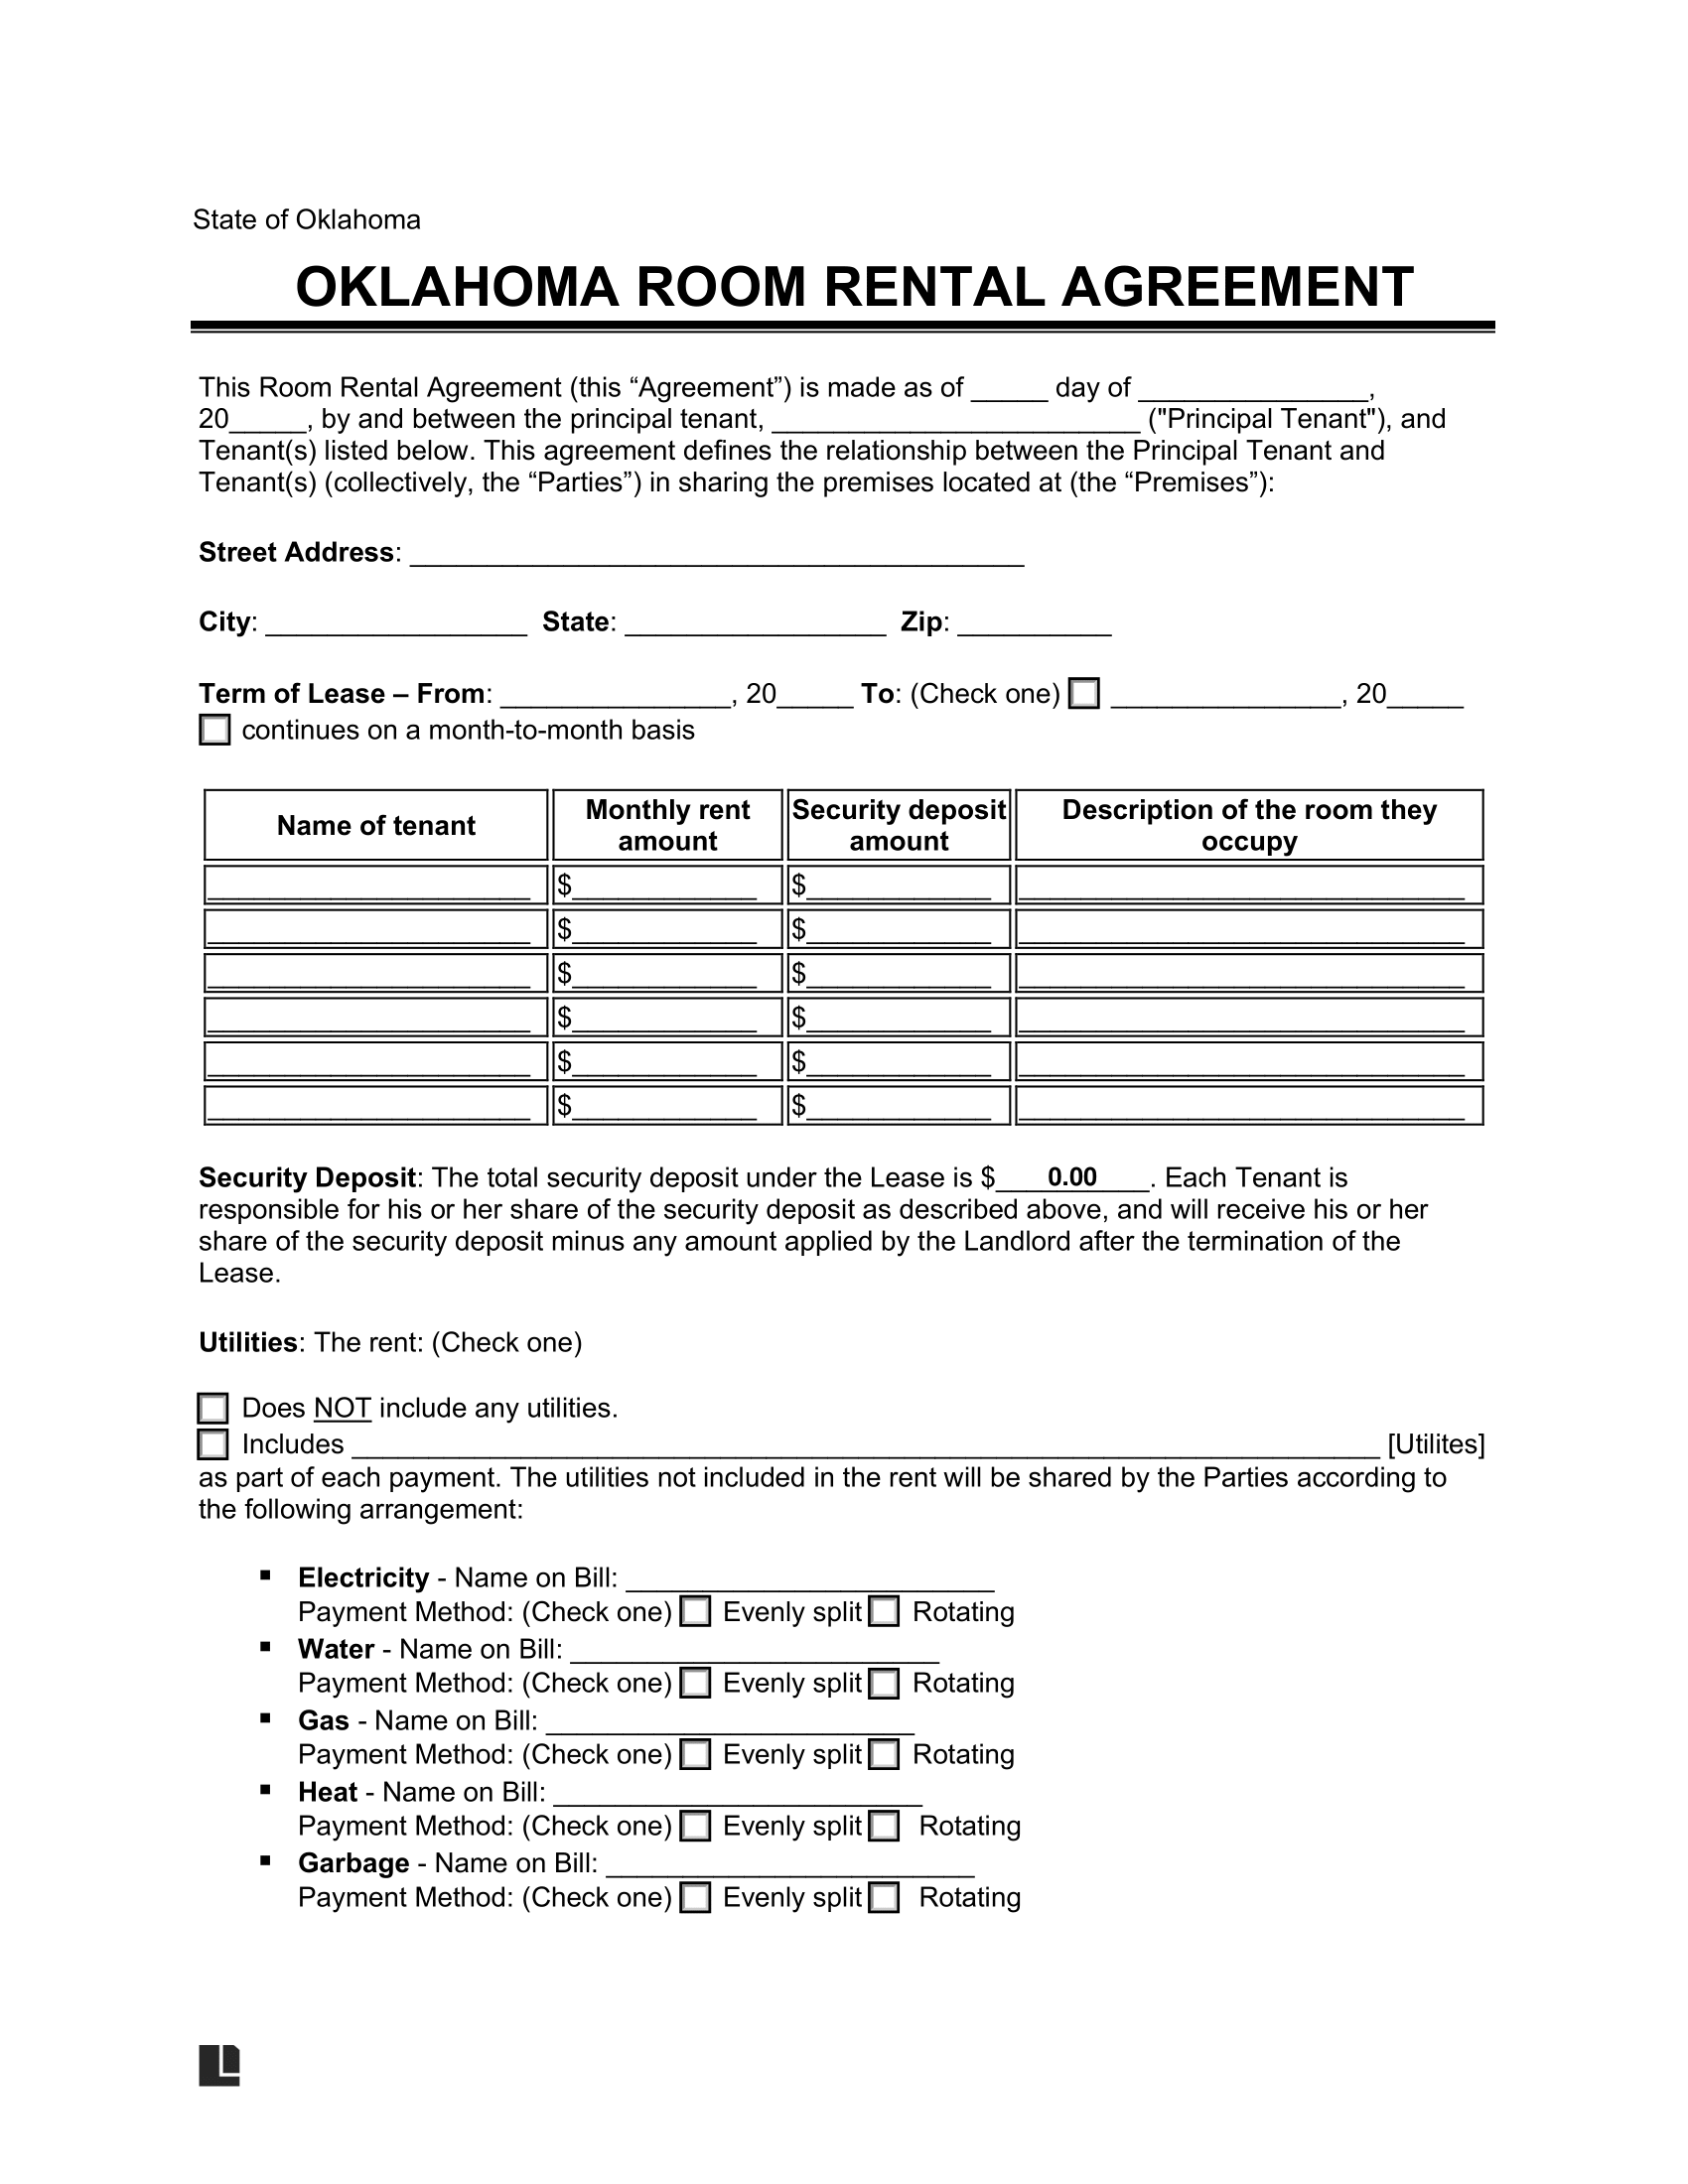 Oklahoma Room Rental Agreement